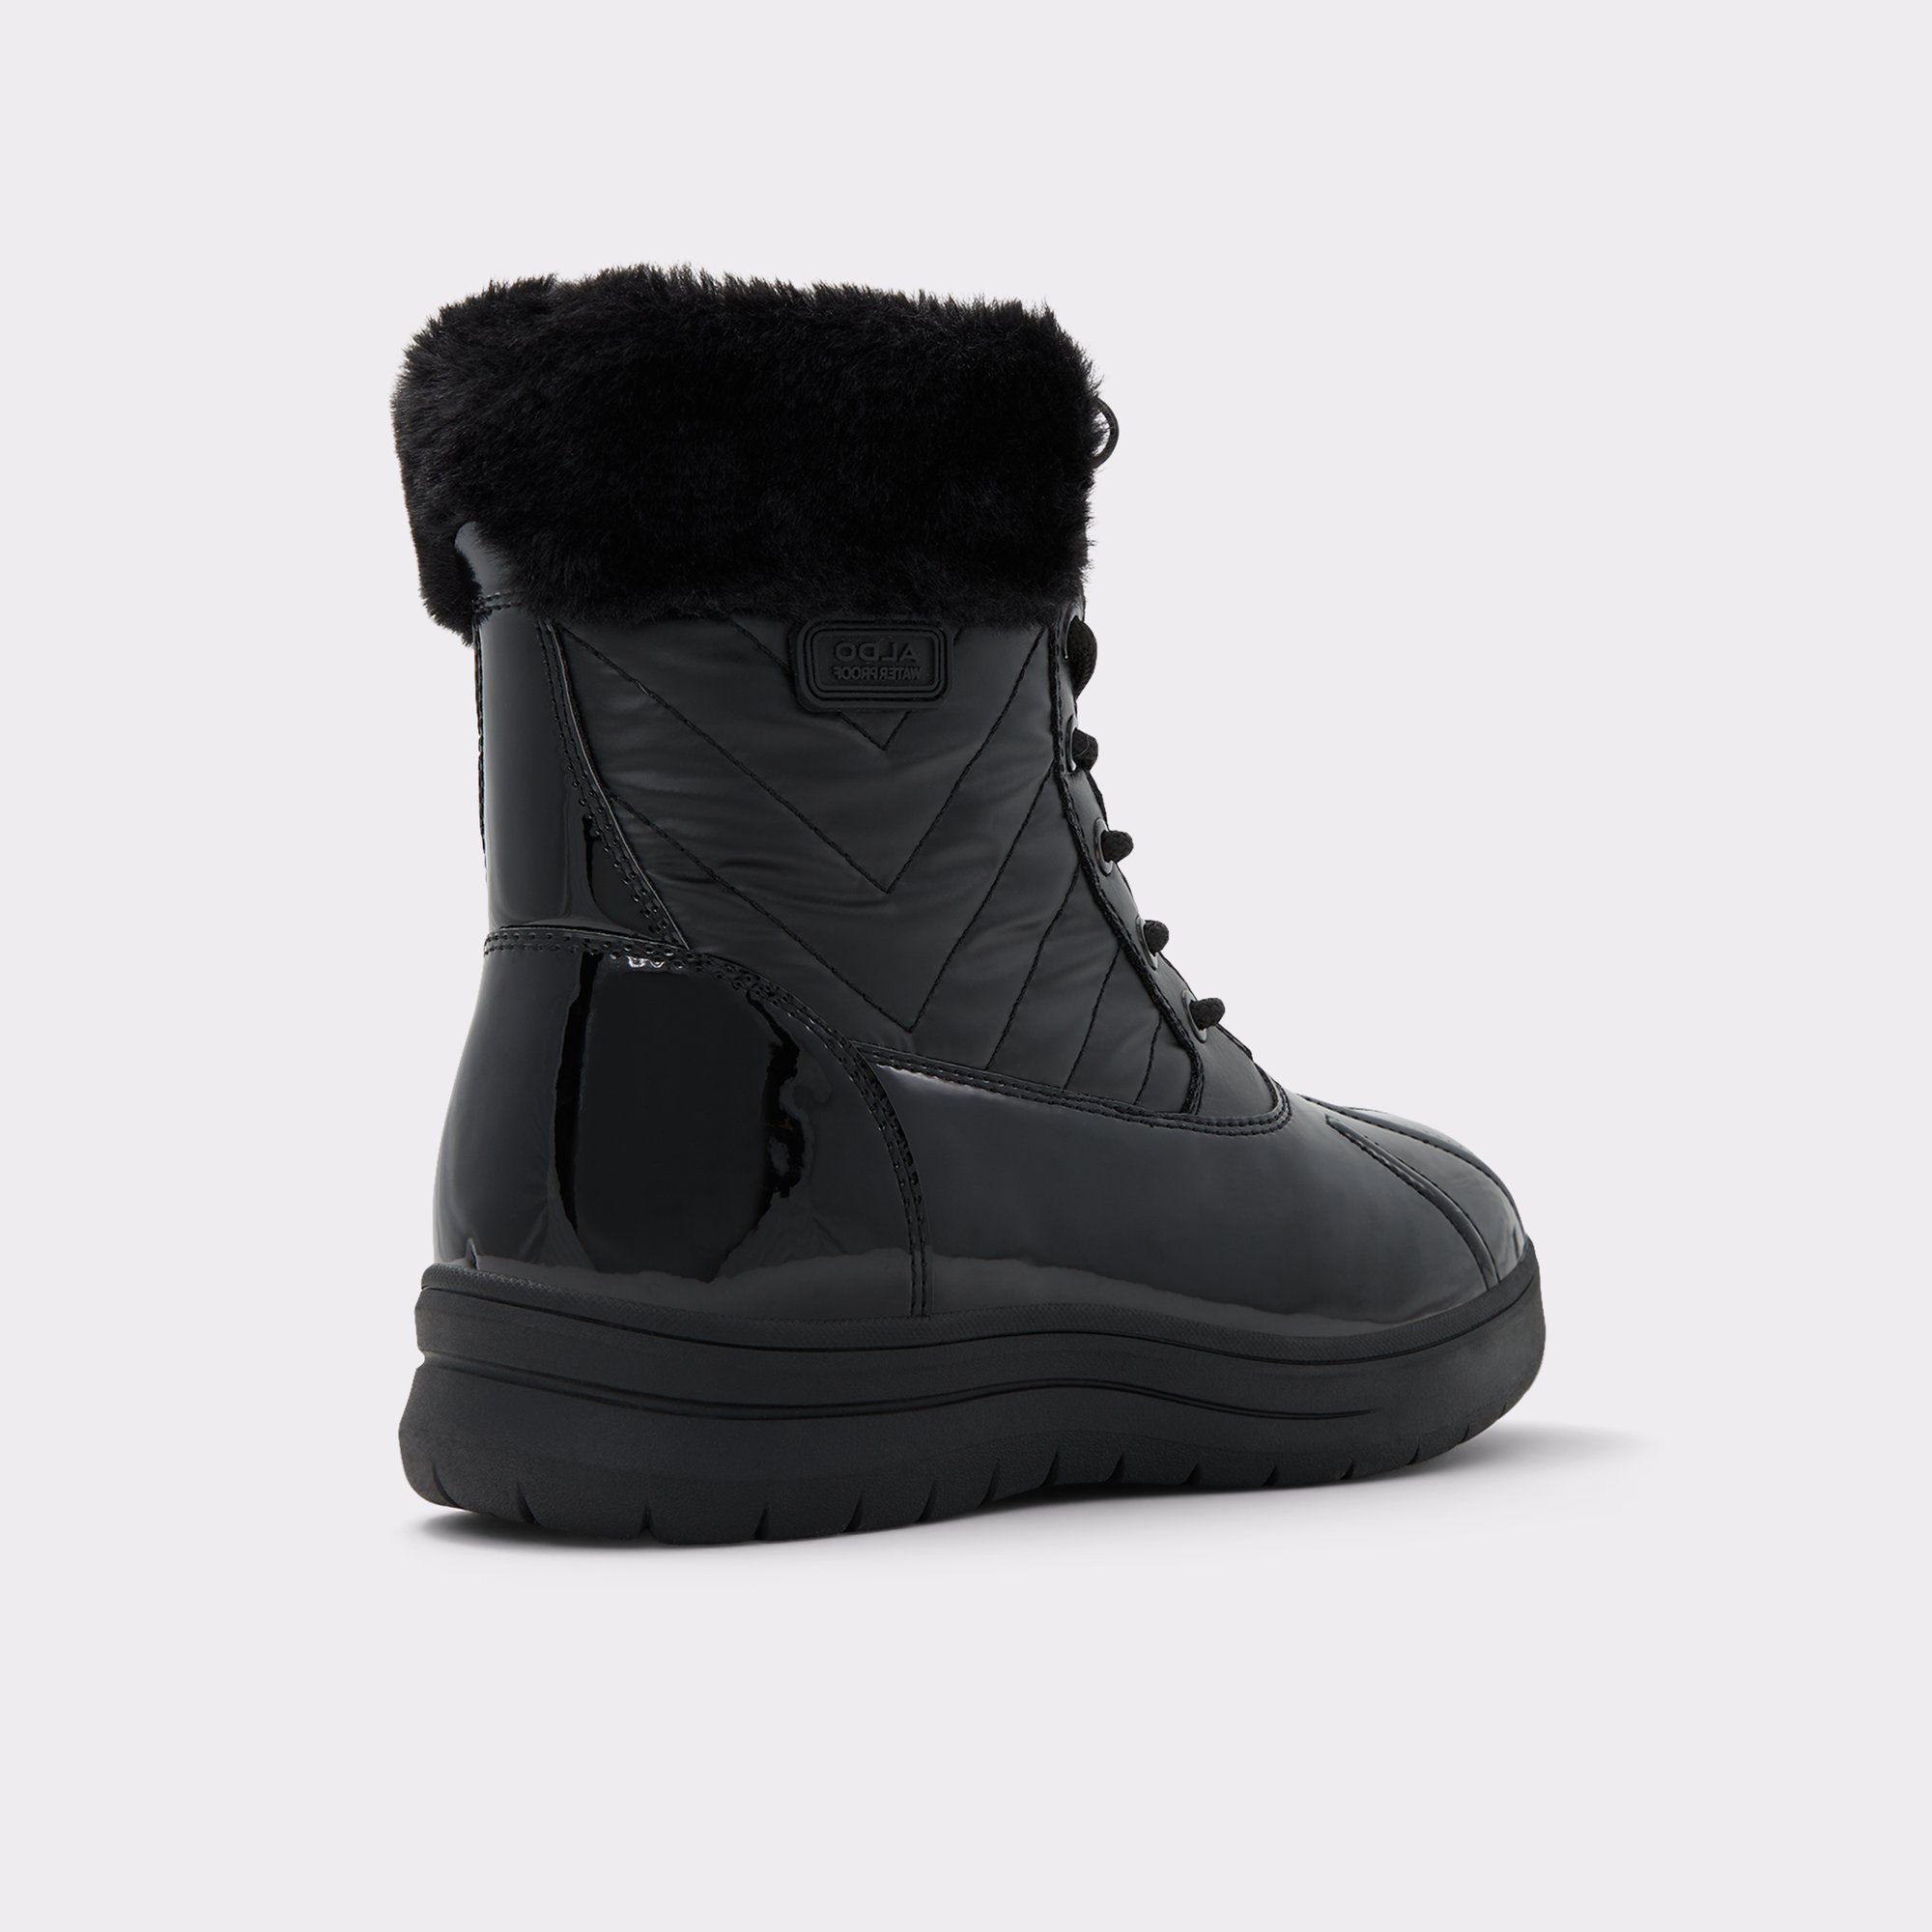 Flurrys Black Women's Winter & Snow Boots | ALDO US